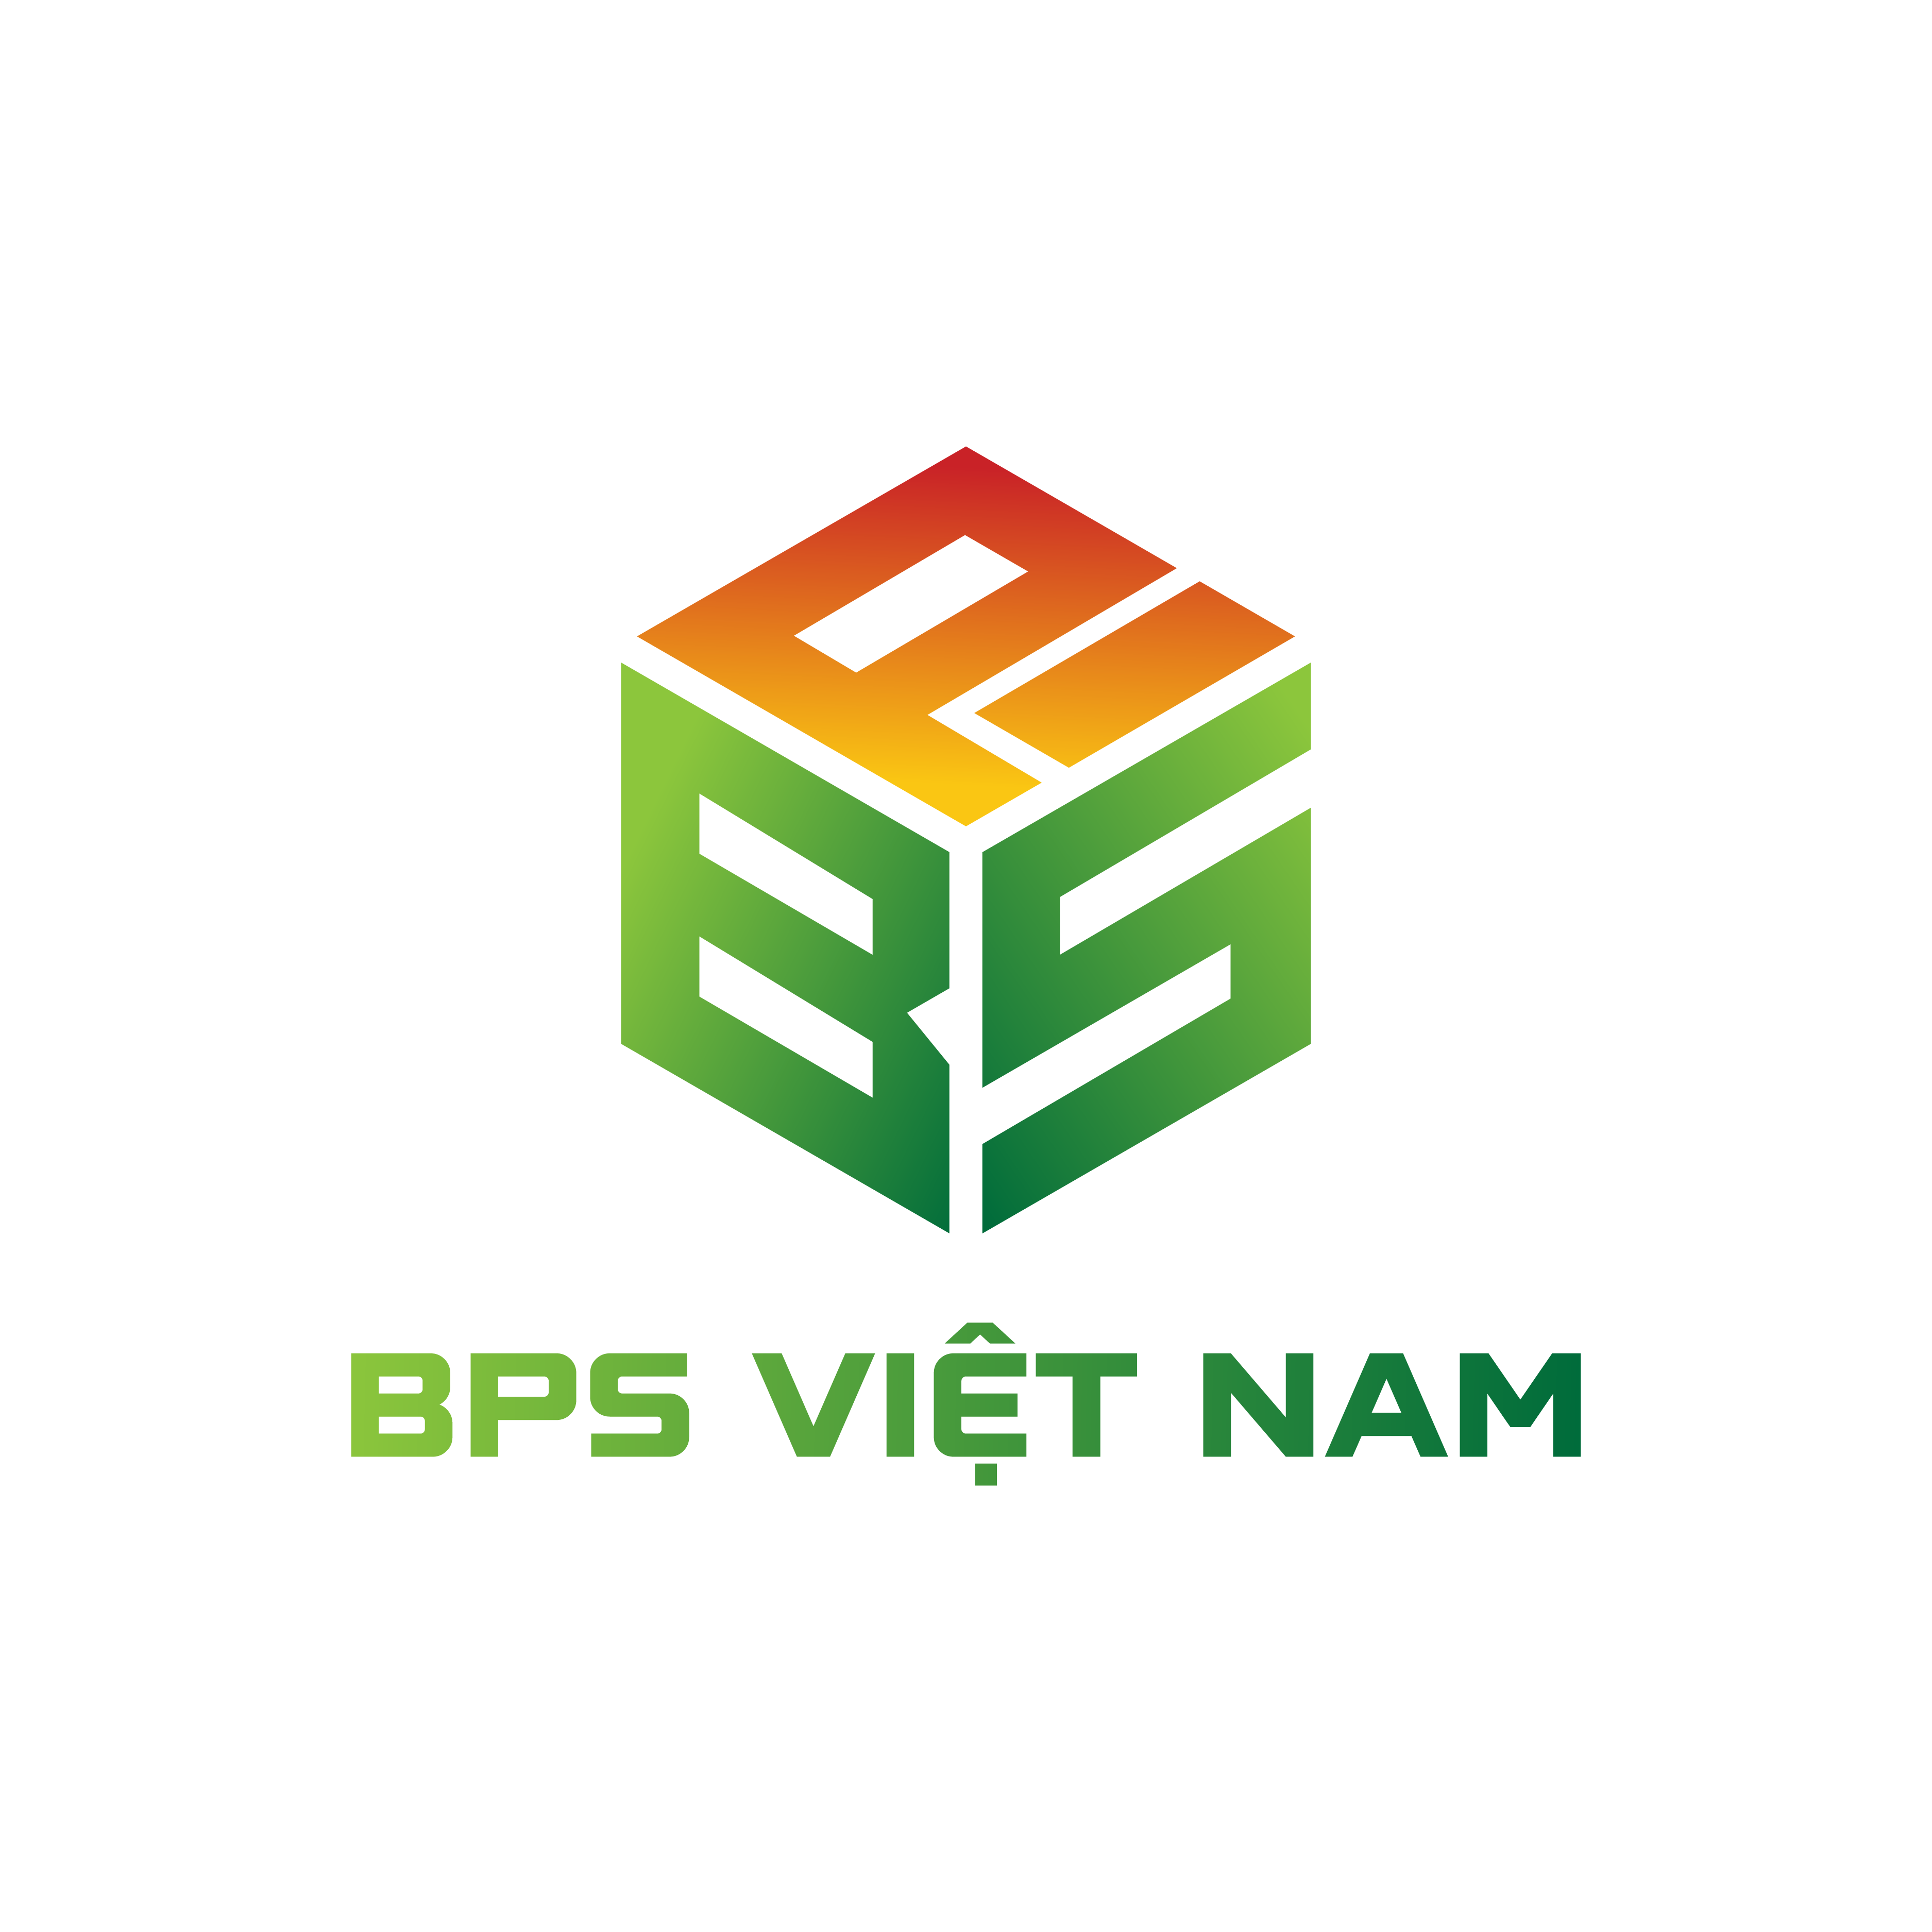 Bps ViỆt Nam 01